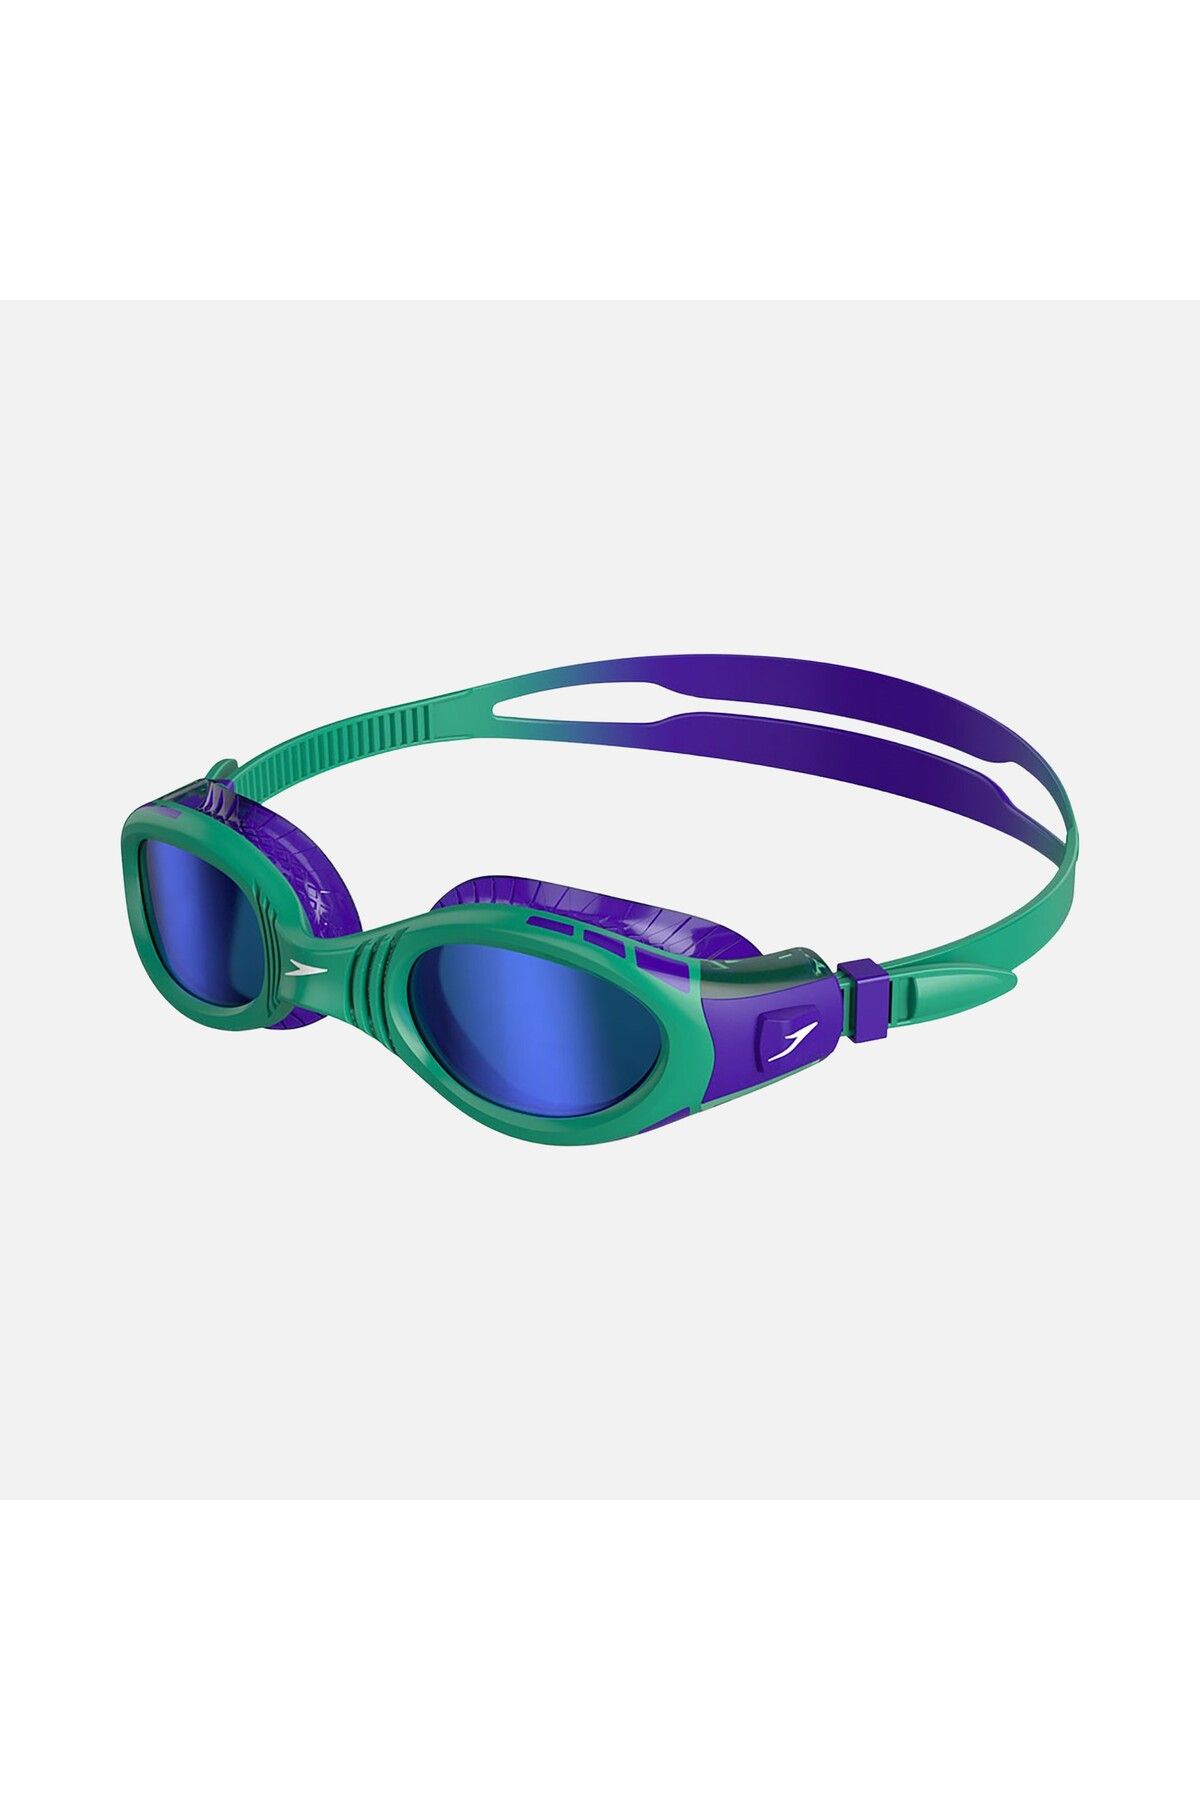 SPEEDO Futura Biofuse Flexiseal Mirrored Çocuk Yüzücü Gözlüğü